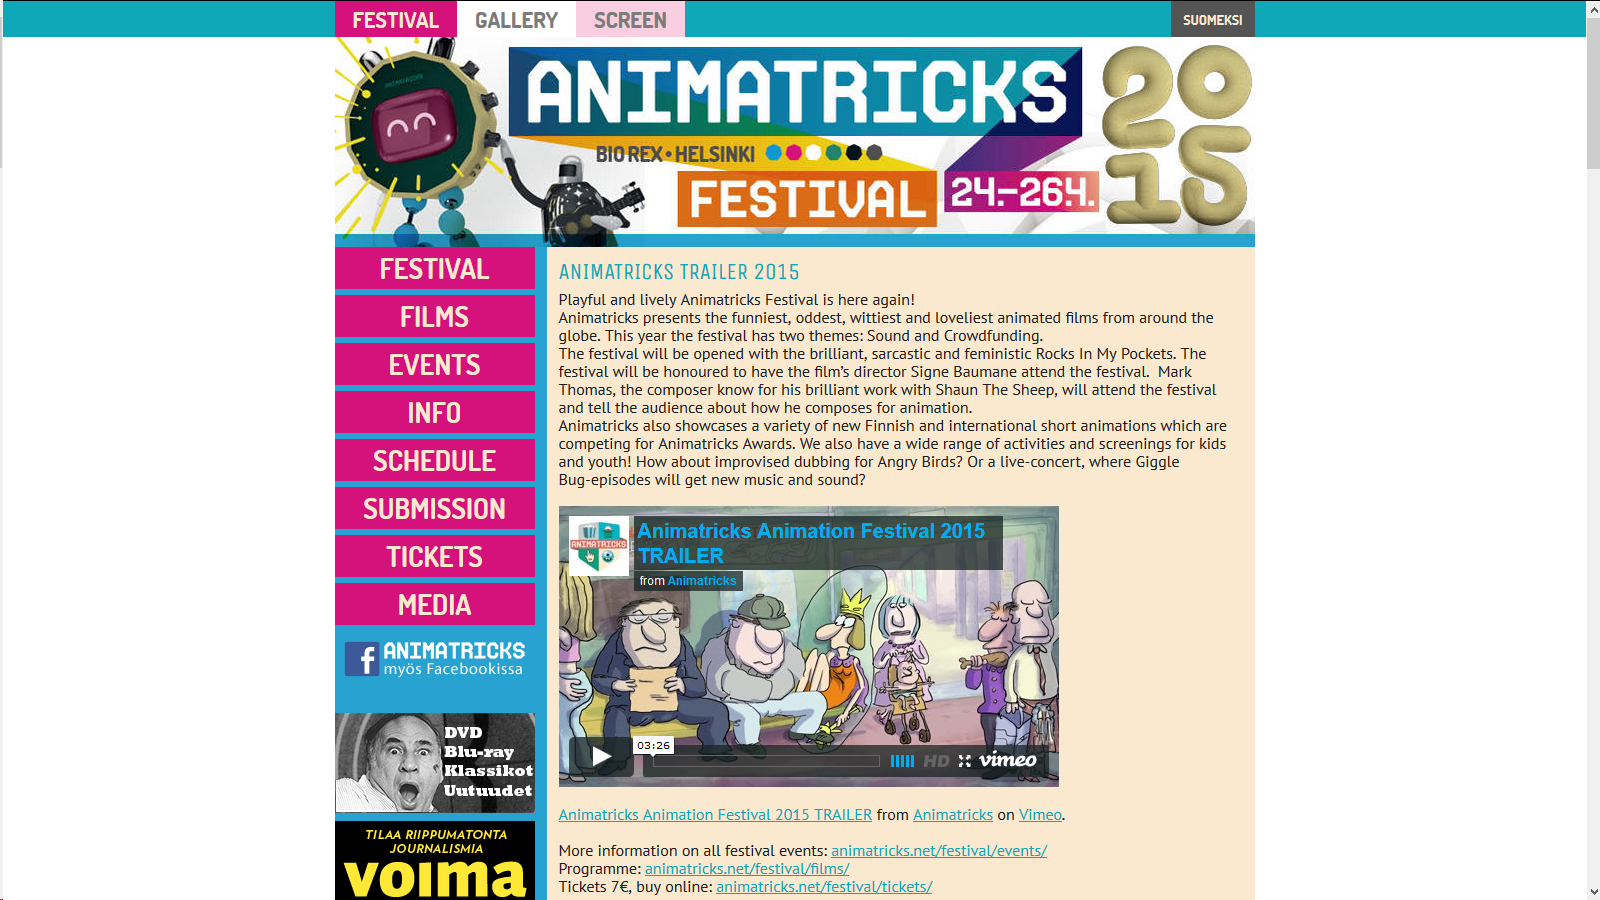 http://www.animatricks.net/festival/